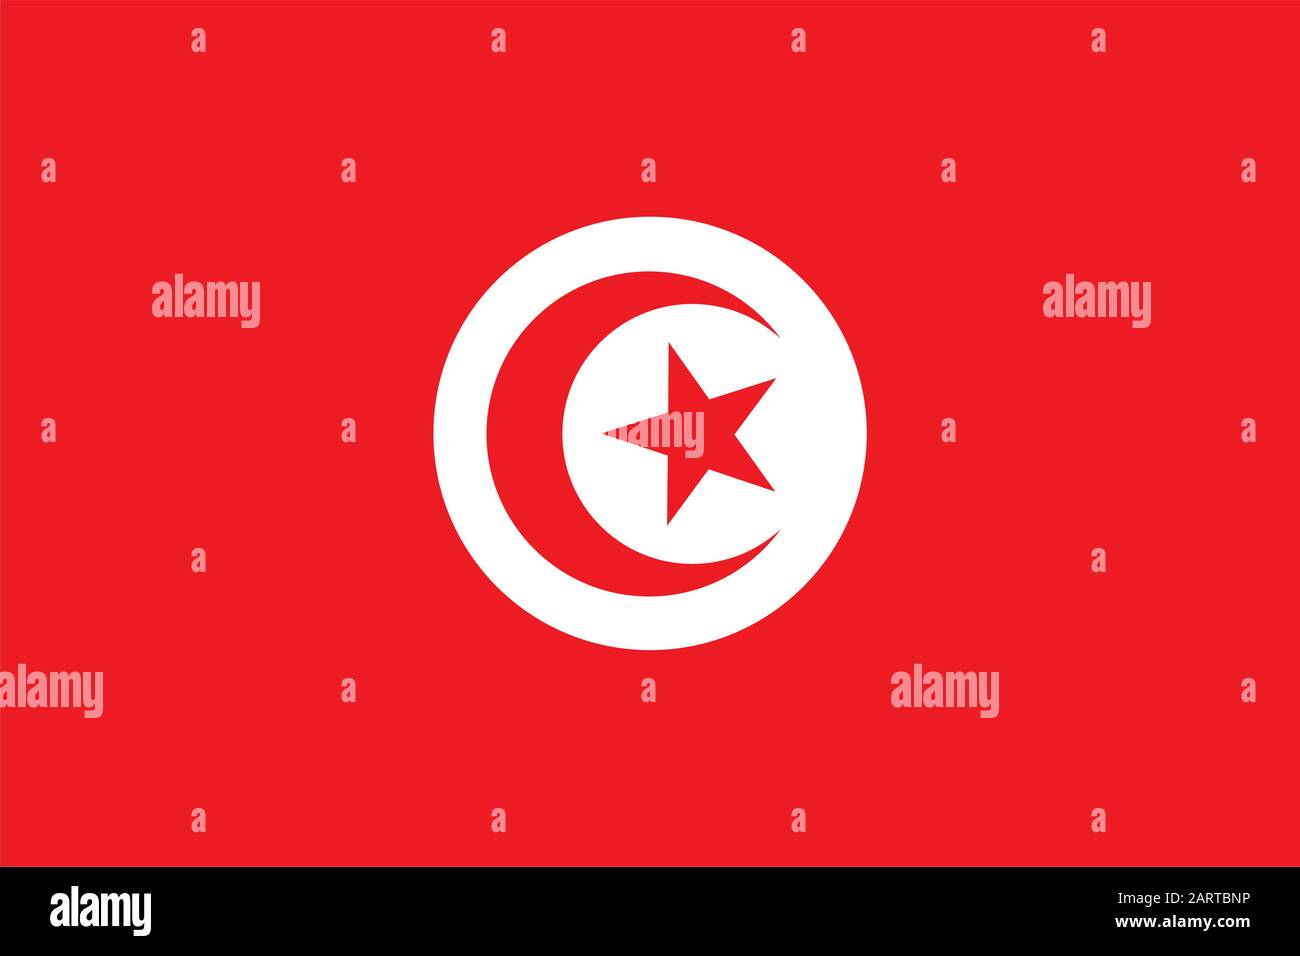 Bandiera della Tunisia. Simbolo di stato tunisino. Banner rettangolare con la stella a cinque punte che circonda la mezzaluna al centro. Colori e proporzioni corretti. V Illustrazione Vettoriale